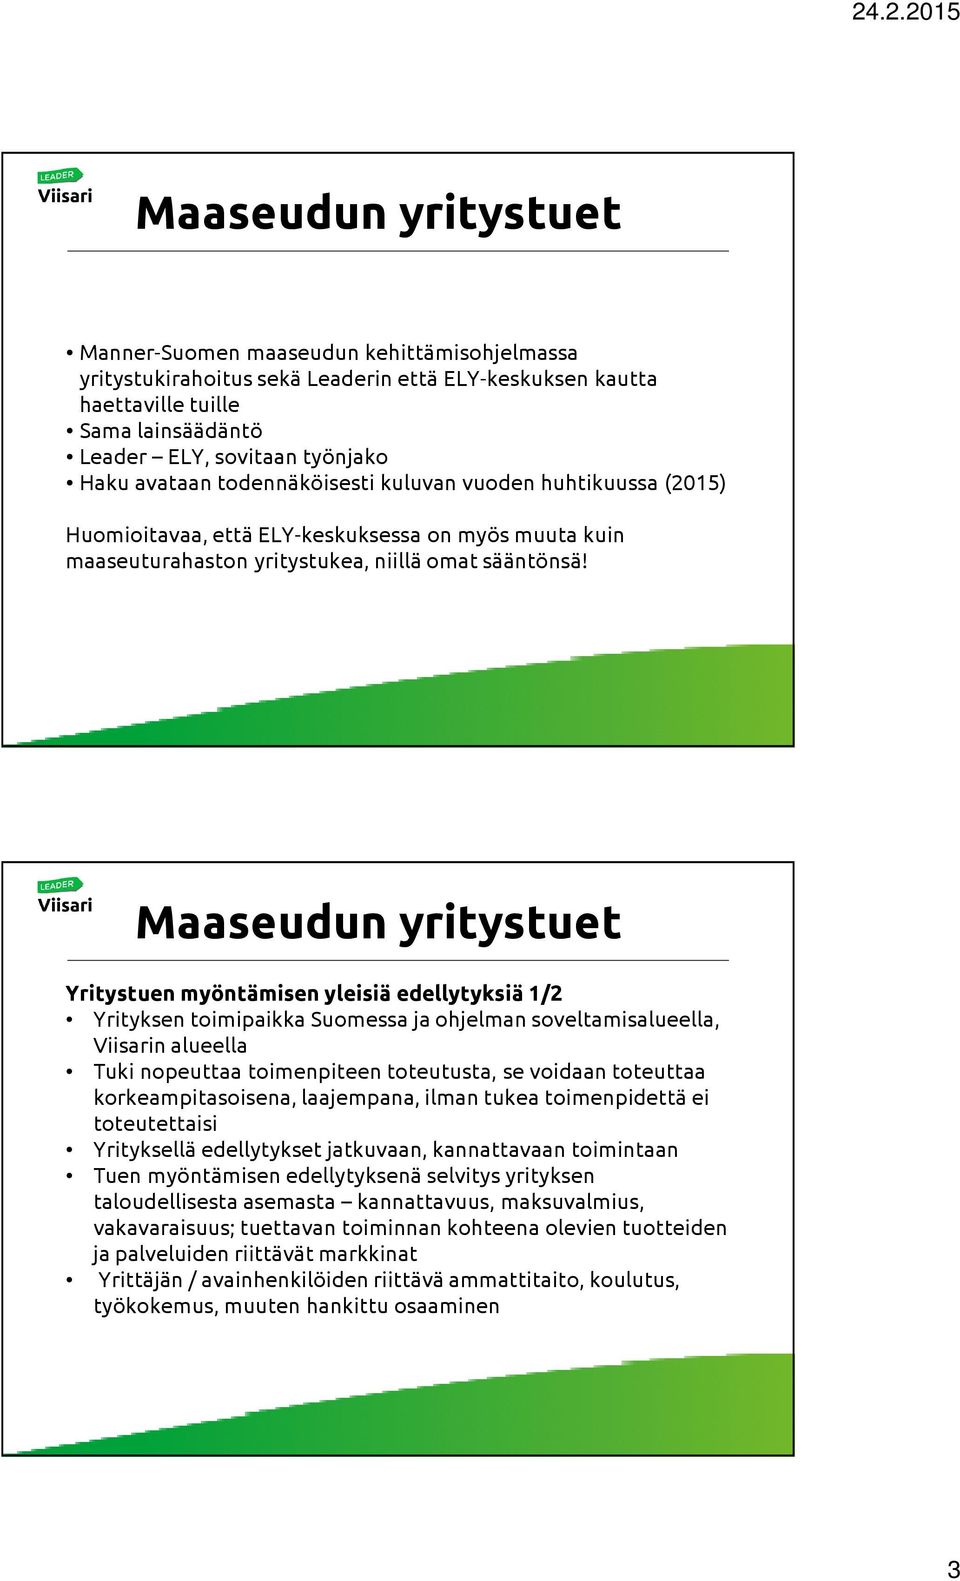 Yritystuen myöntämisen yleisiä edellytyksiä 1/2 Yrityksen toimipaikka Suomessa ja ohjelman soveltamisalueella, Viisarin alueella Tuki nopeuttaa toimenpiteen toteutusta, se voidaan toteuttaa